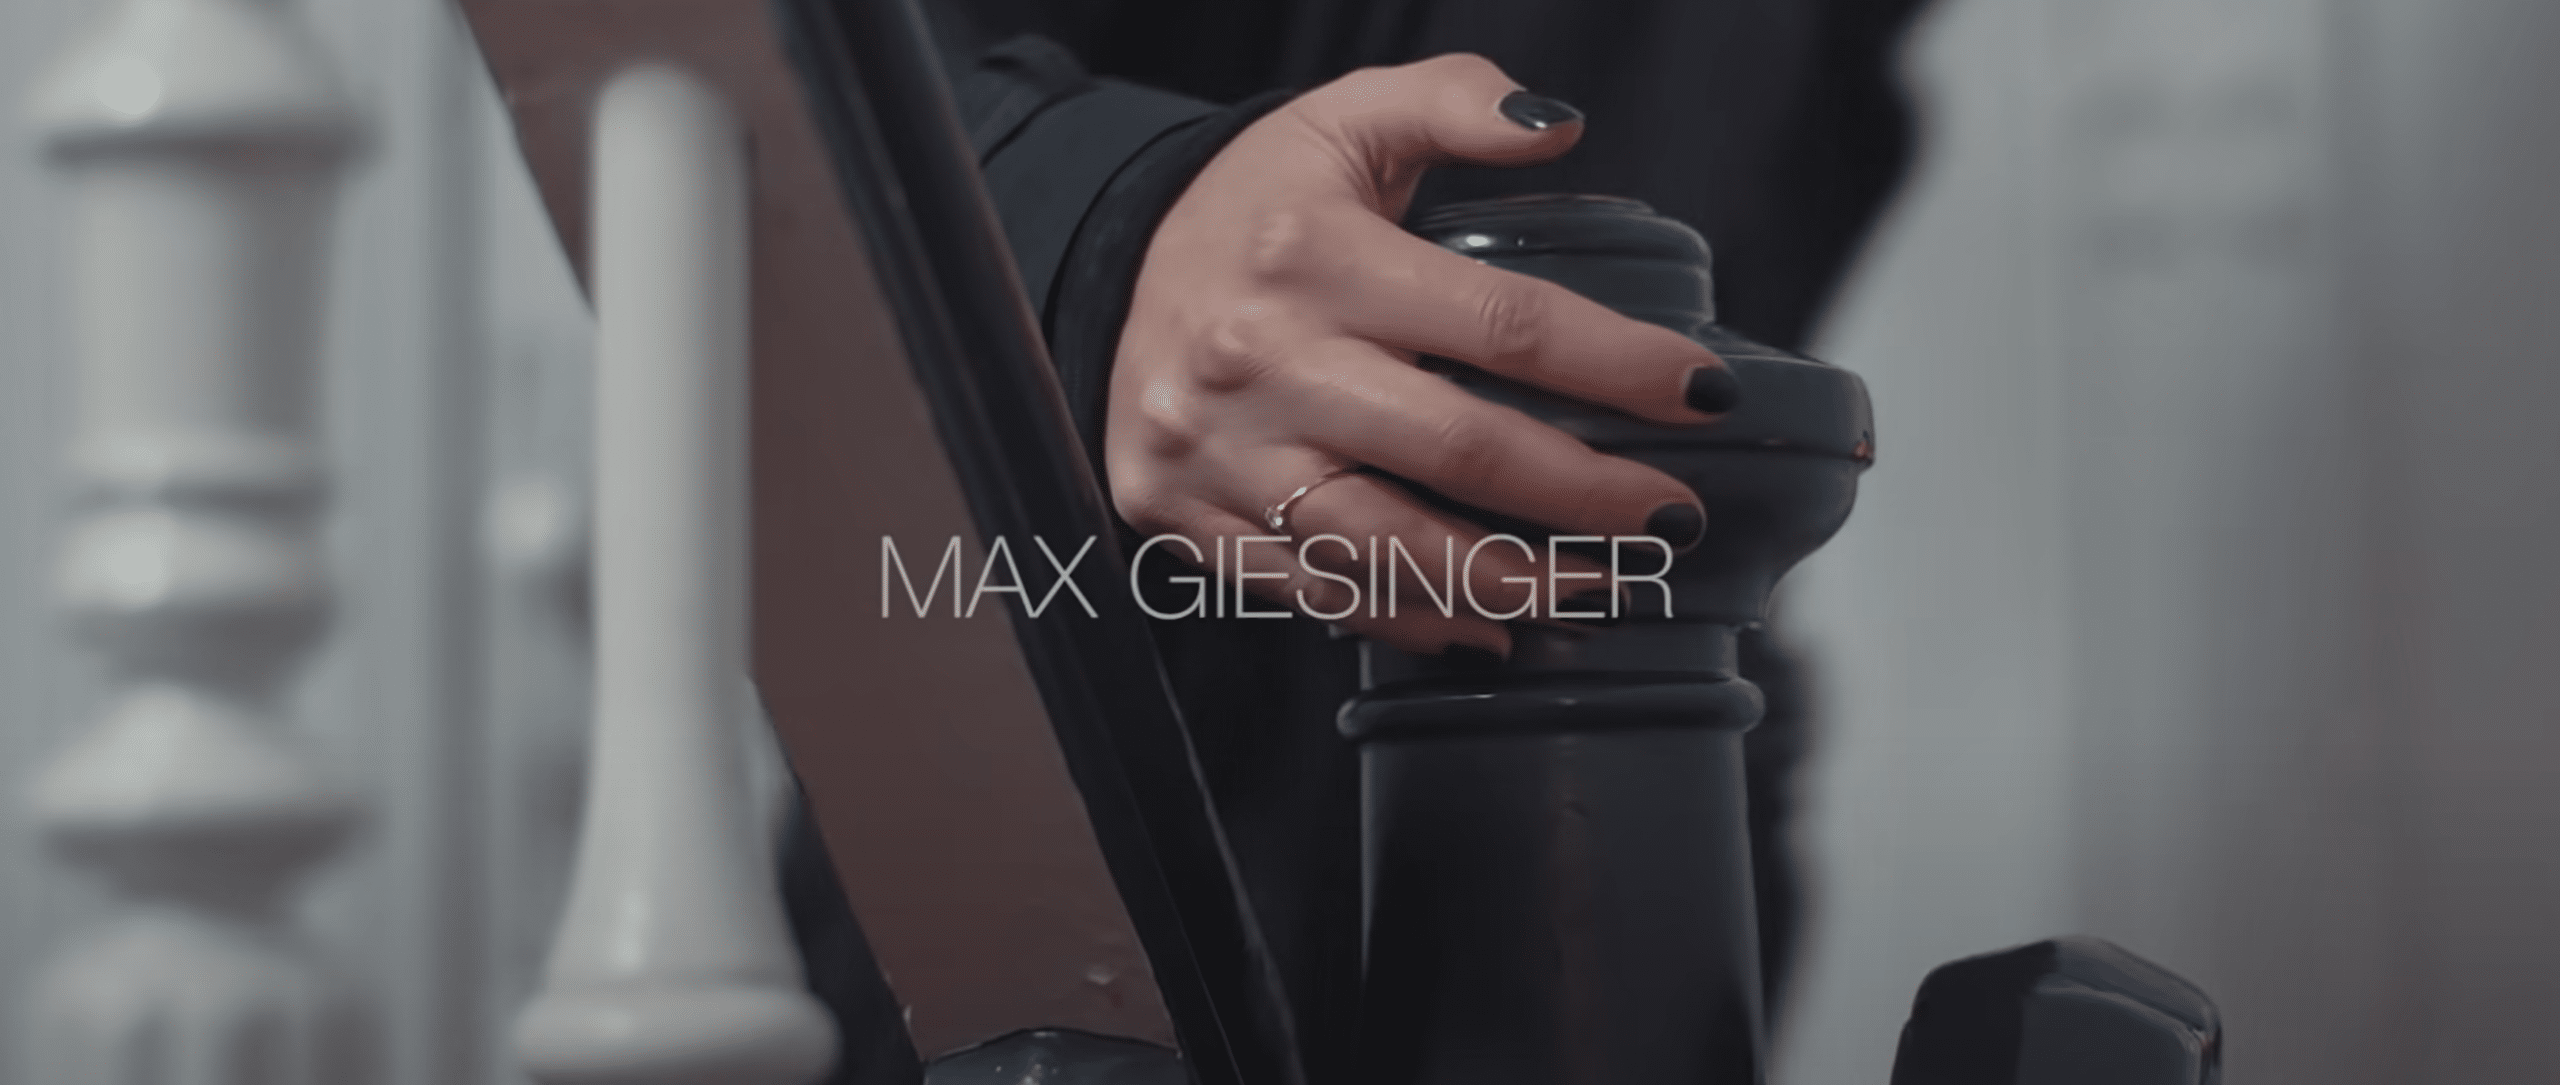 Max Giesinger – 80 Millionen